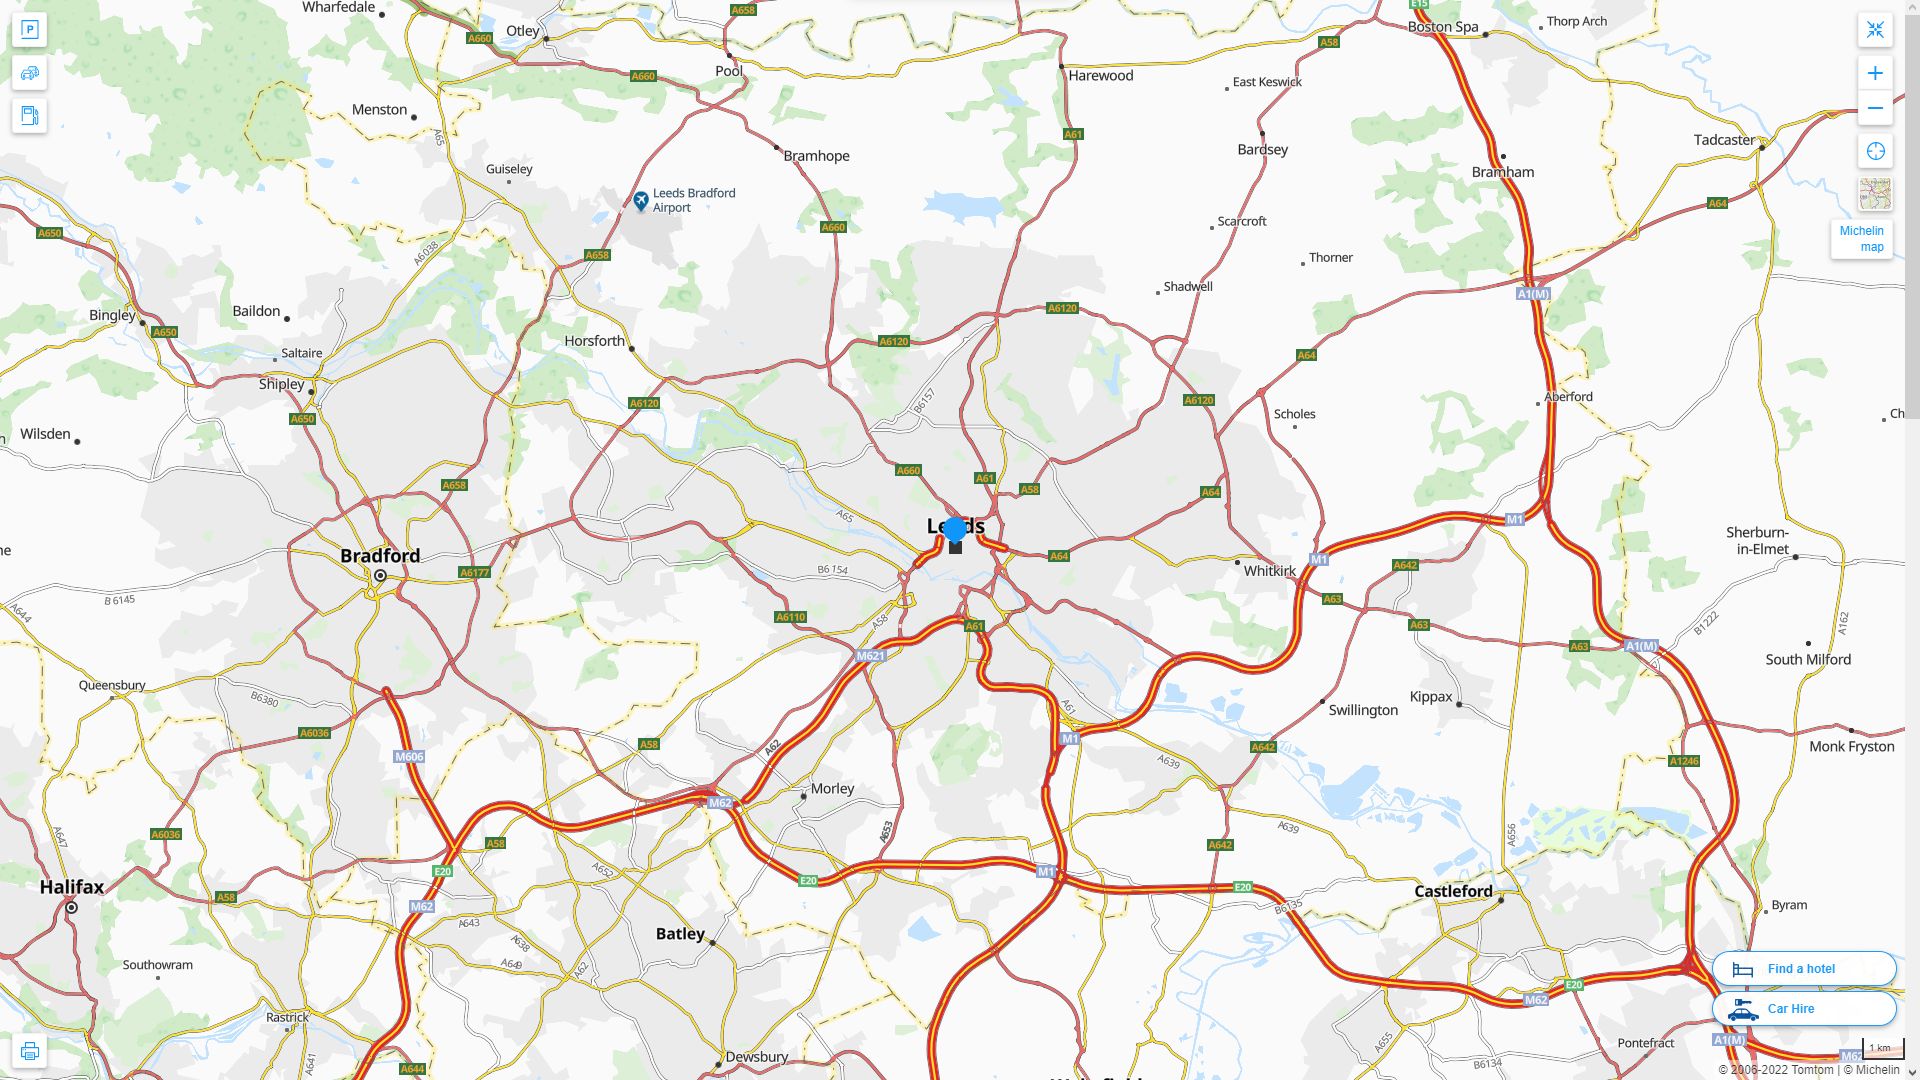 Leeds Royaume Uni Autoroute et carte routiere